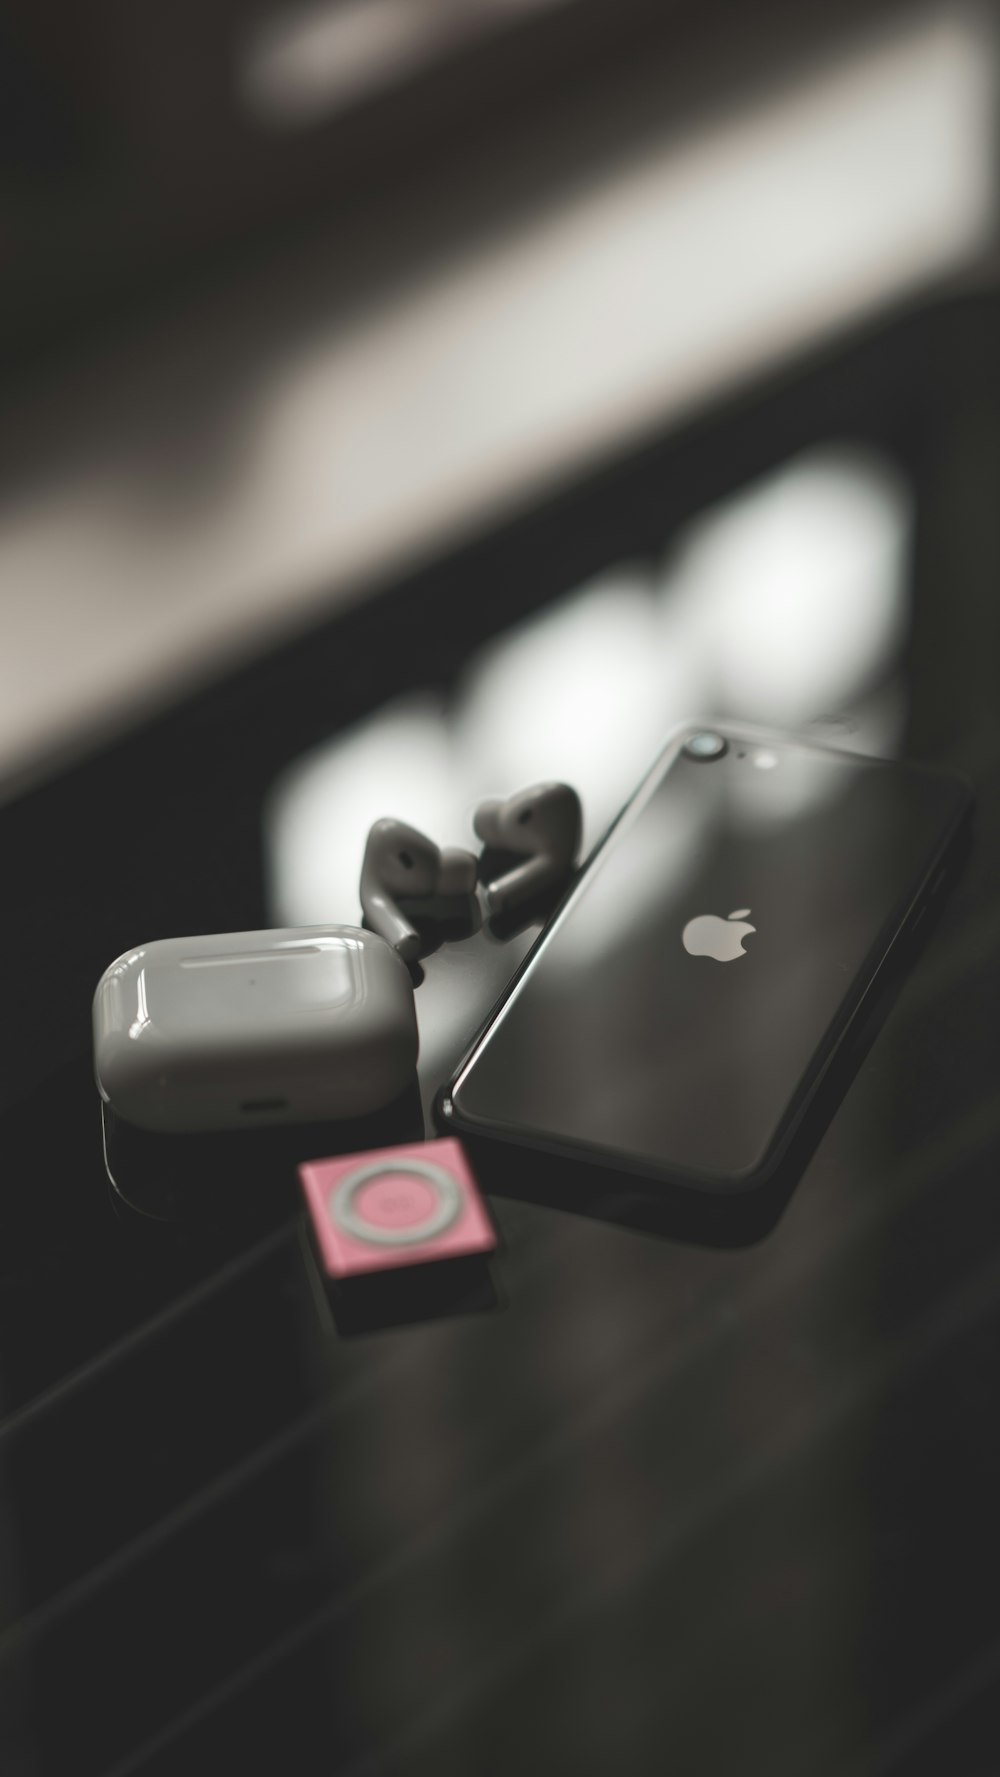 iPhone 7 negro con auriculares Beats by Dr Dre negros y rojos